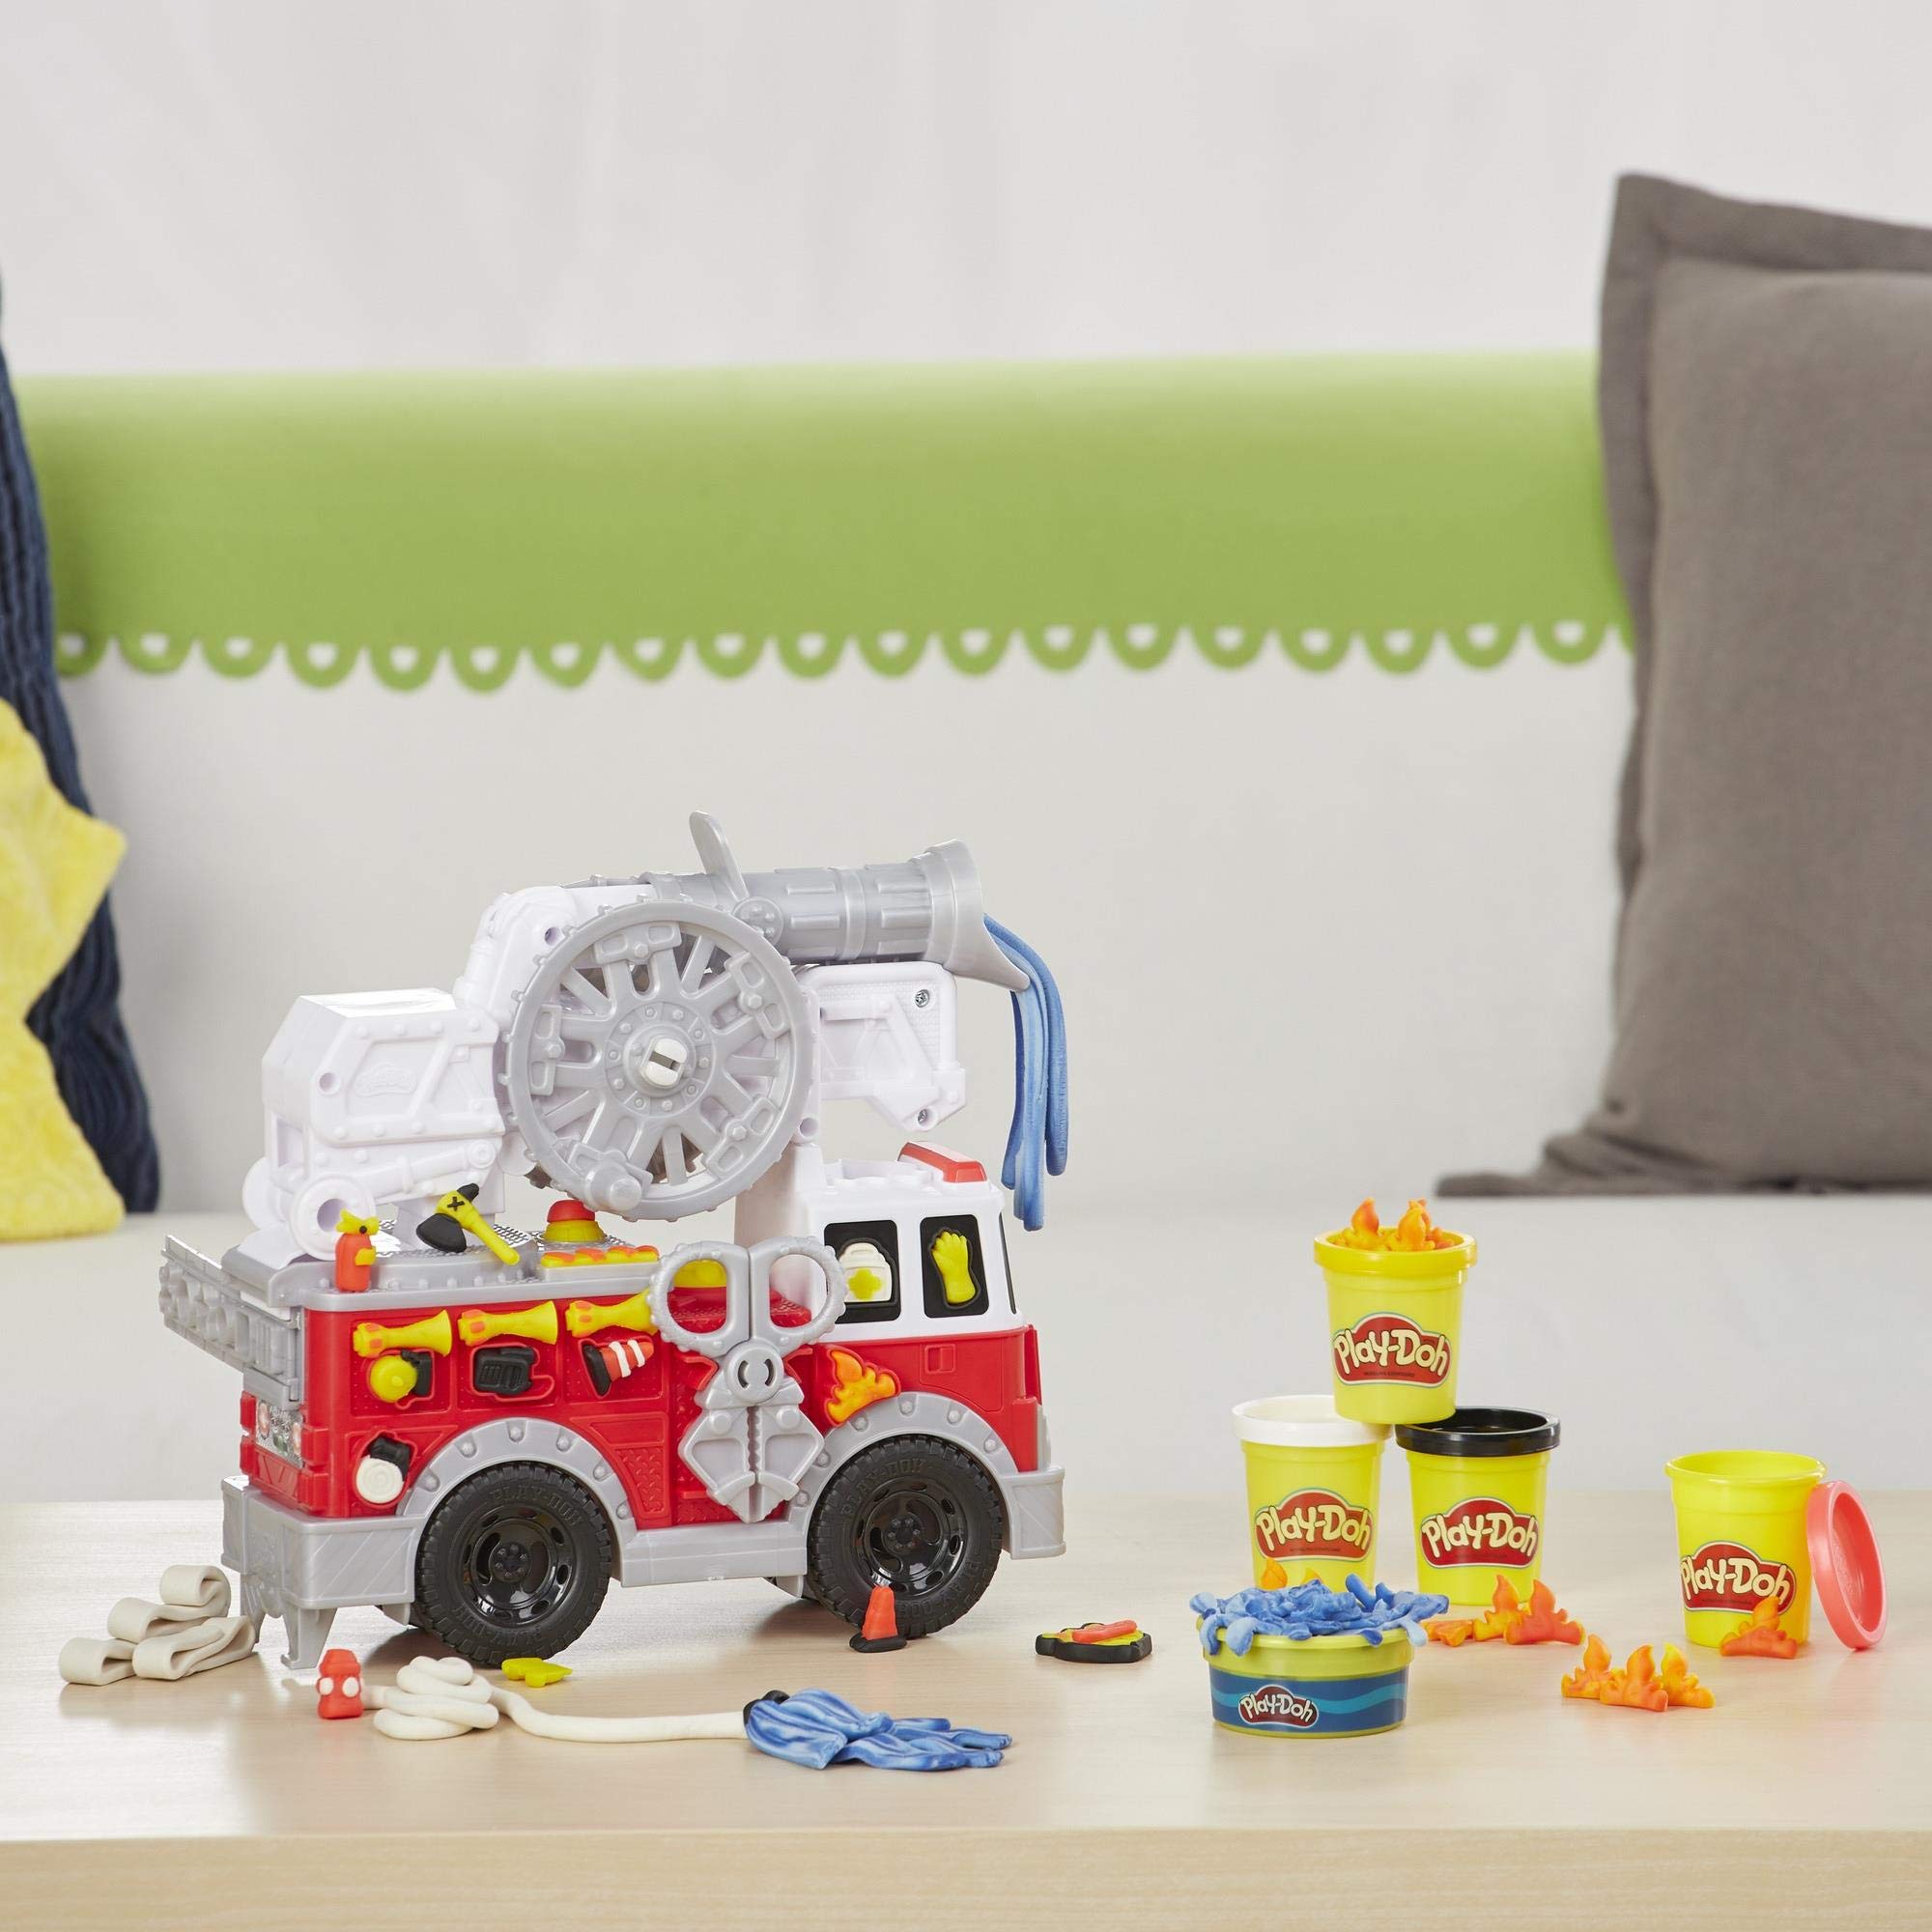 Play-Doh E6103EU5 Wheels Feuerwehrauto Spielzeug mit 5 Dosen einschließlich Wasserknete, für fantasievolles und kreatives Spielen